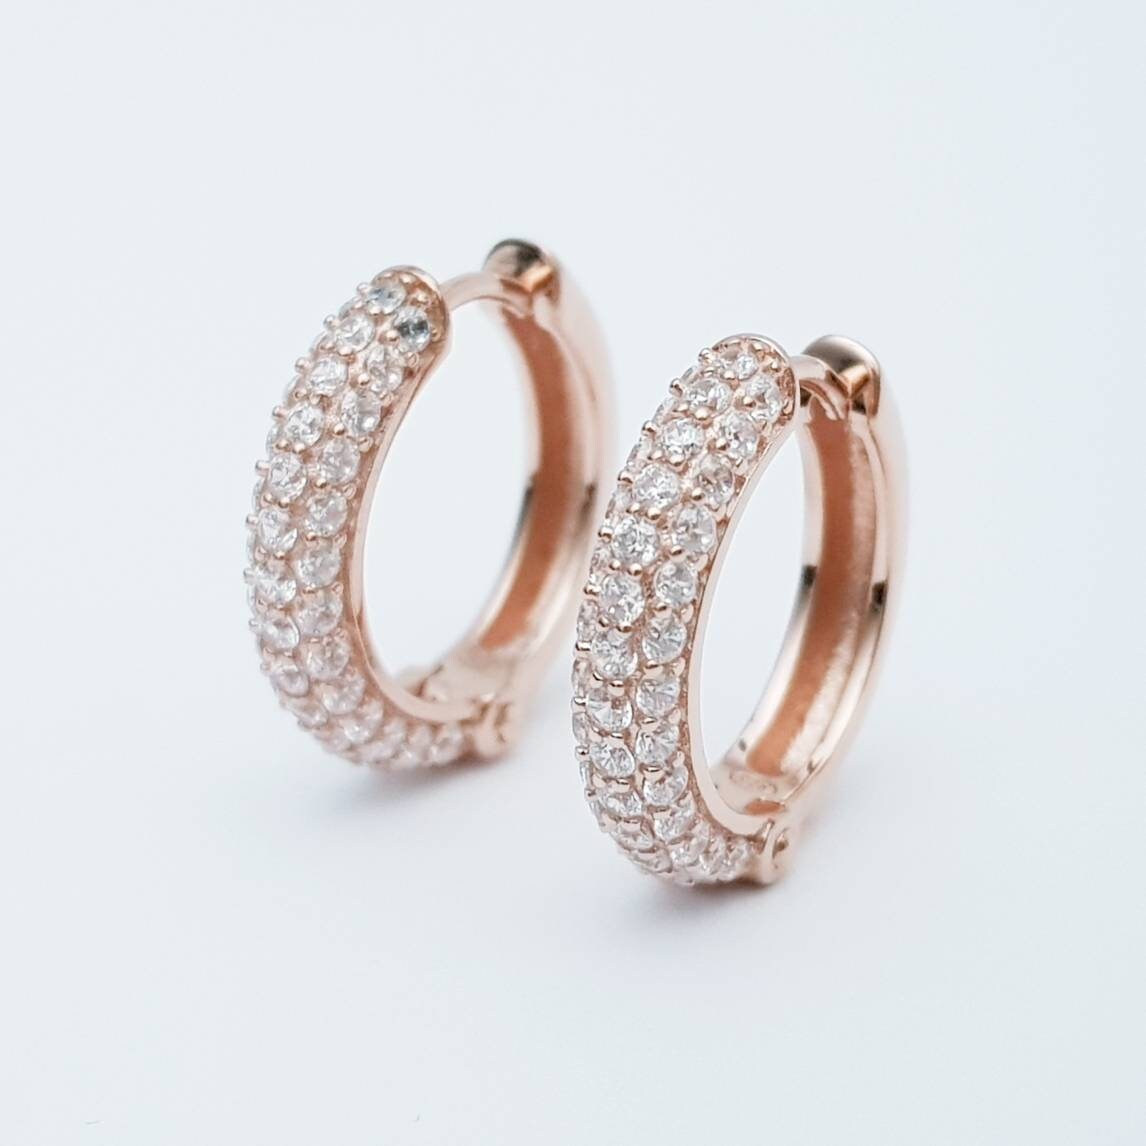 Gold hoop earrings, rose gold huggie earrings, faux diamond hoop earrings